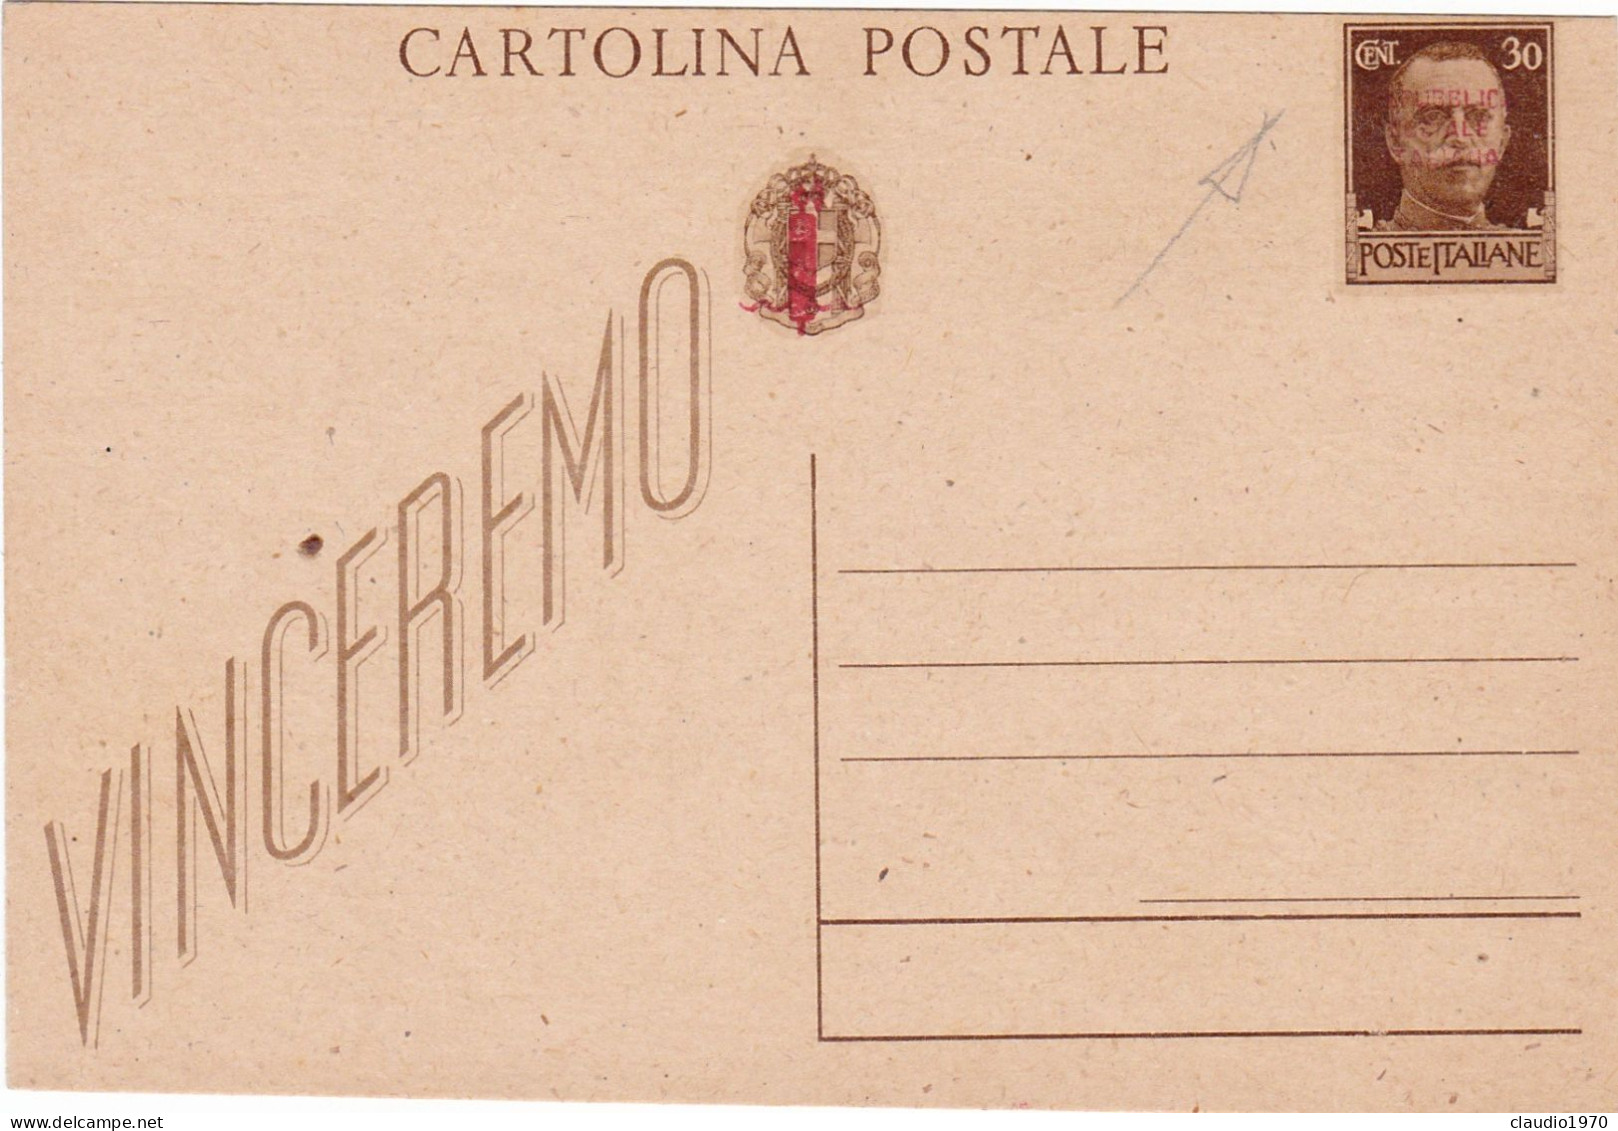 REPUBBLICA SOCIALE ITALIANA - RSI - INTERO POSTALE C.30 - VINCEREMO - FASCETTO  - CARTOLINA POSTALE -NUOVA - Stamped Stationery